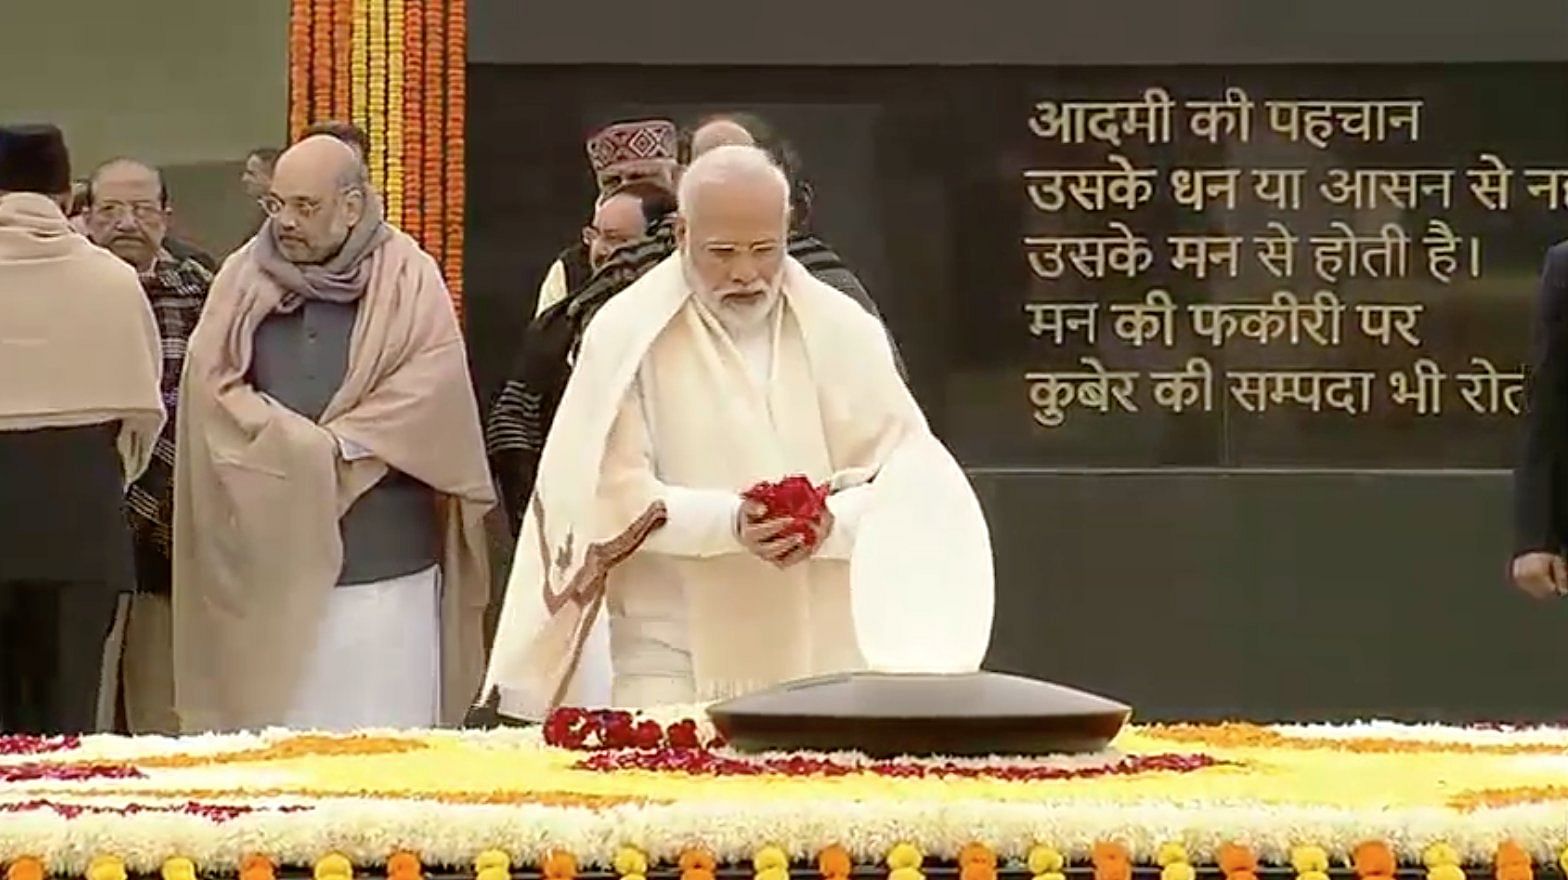  प्रधानमंत्री नरेंद्र मोदी ने दिल्ली में अटल स्मारक पर अटल बिहारी वाजपेयी को श्रद्धांजलि दी